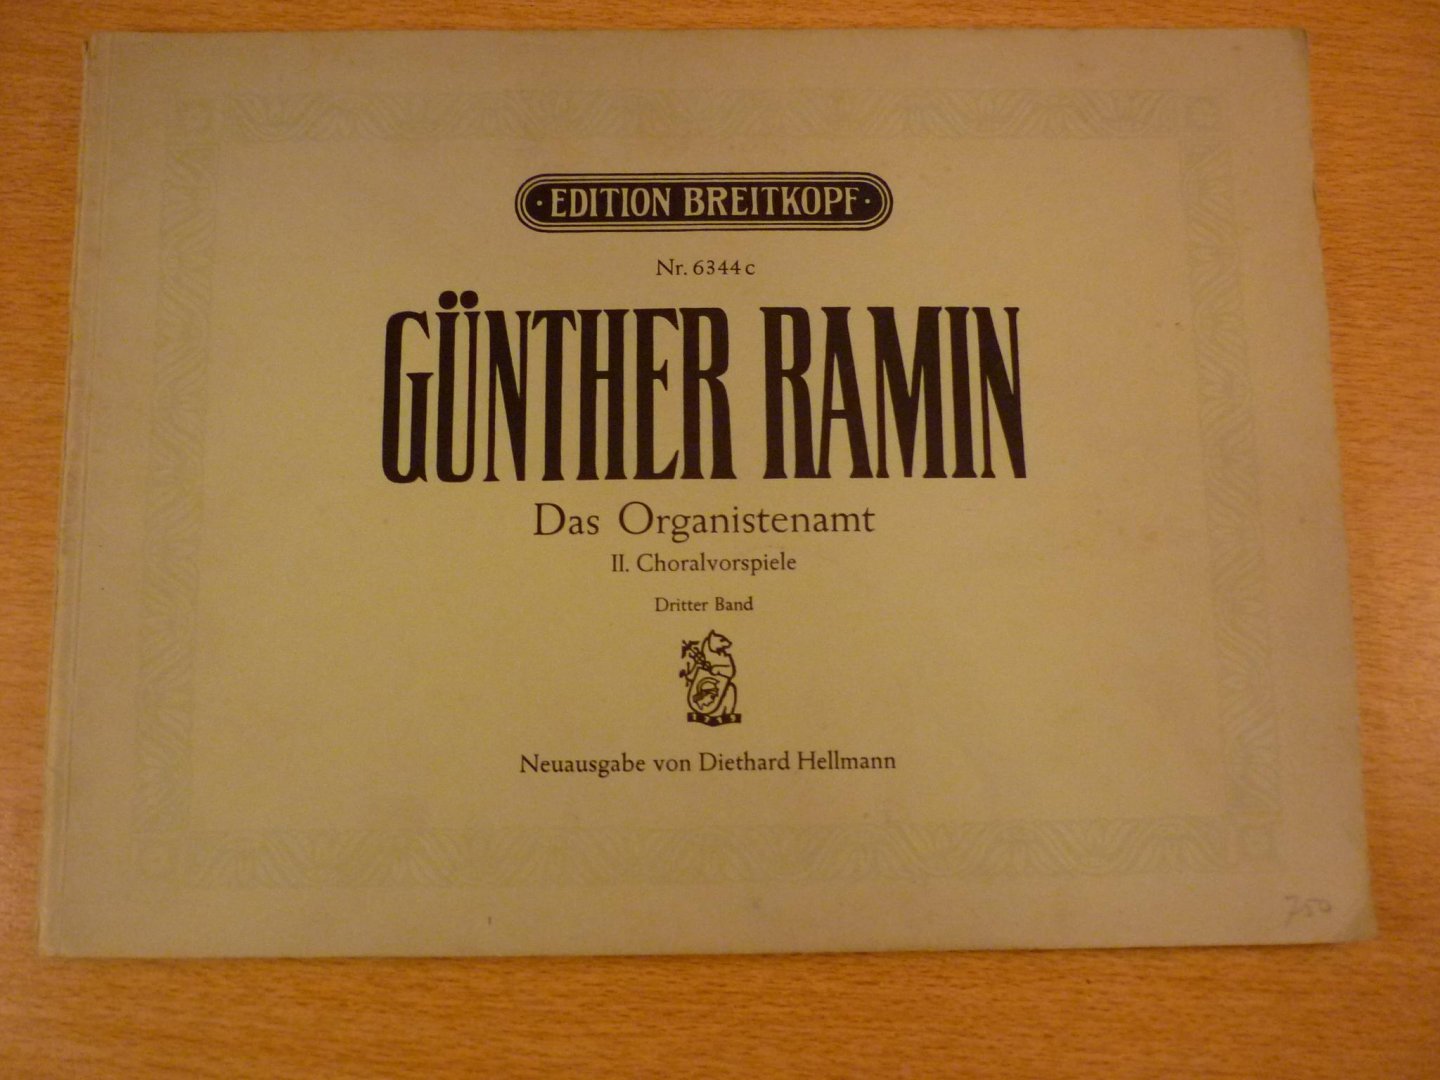 Ramin; Gunther - Das Organistenamt; II Choralvorspiele - Dritter Band (Diethard Hellmann)